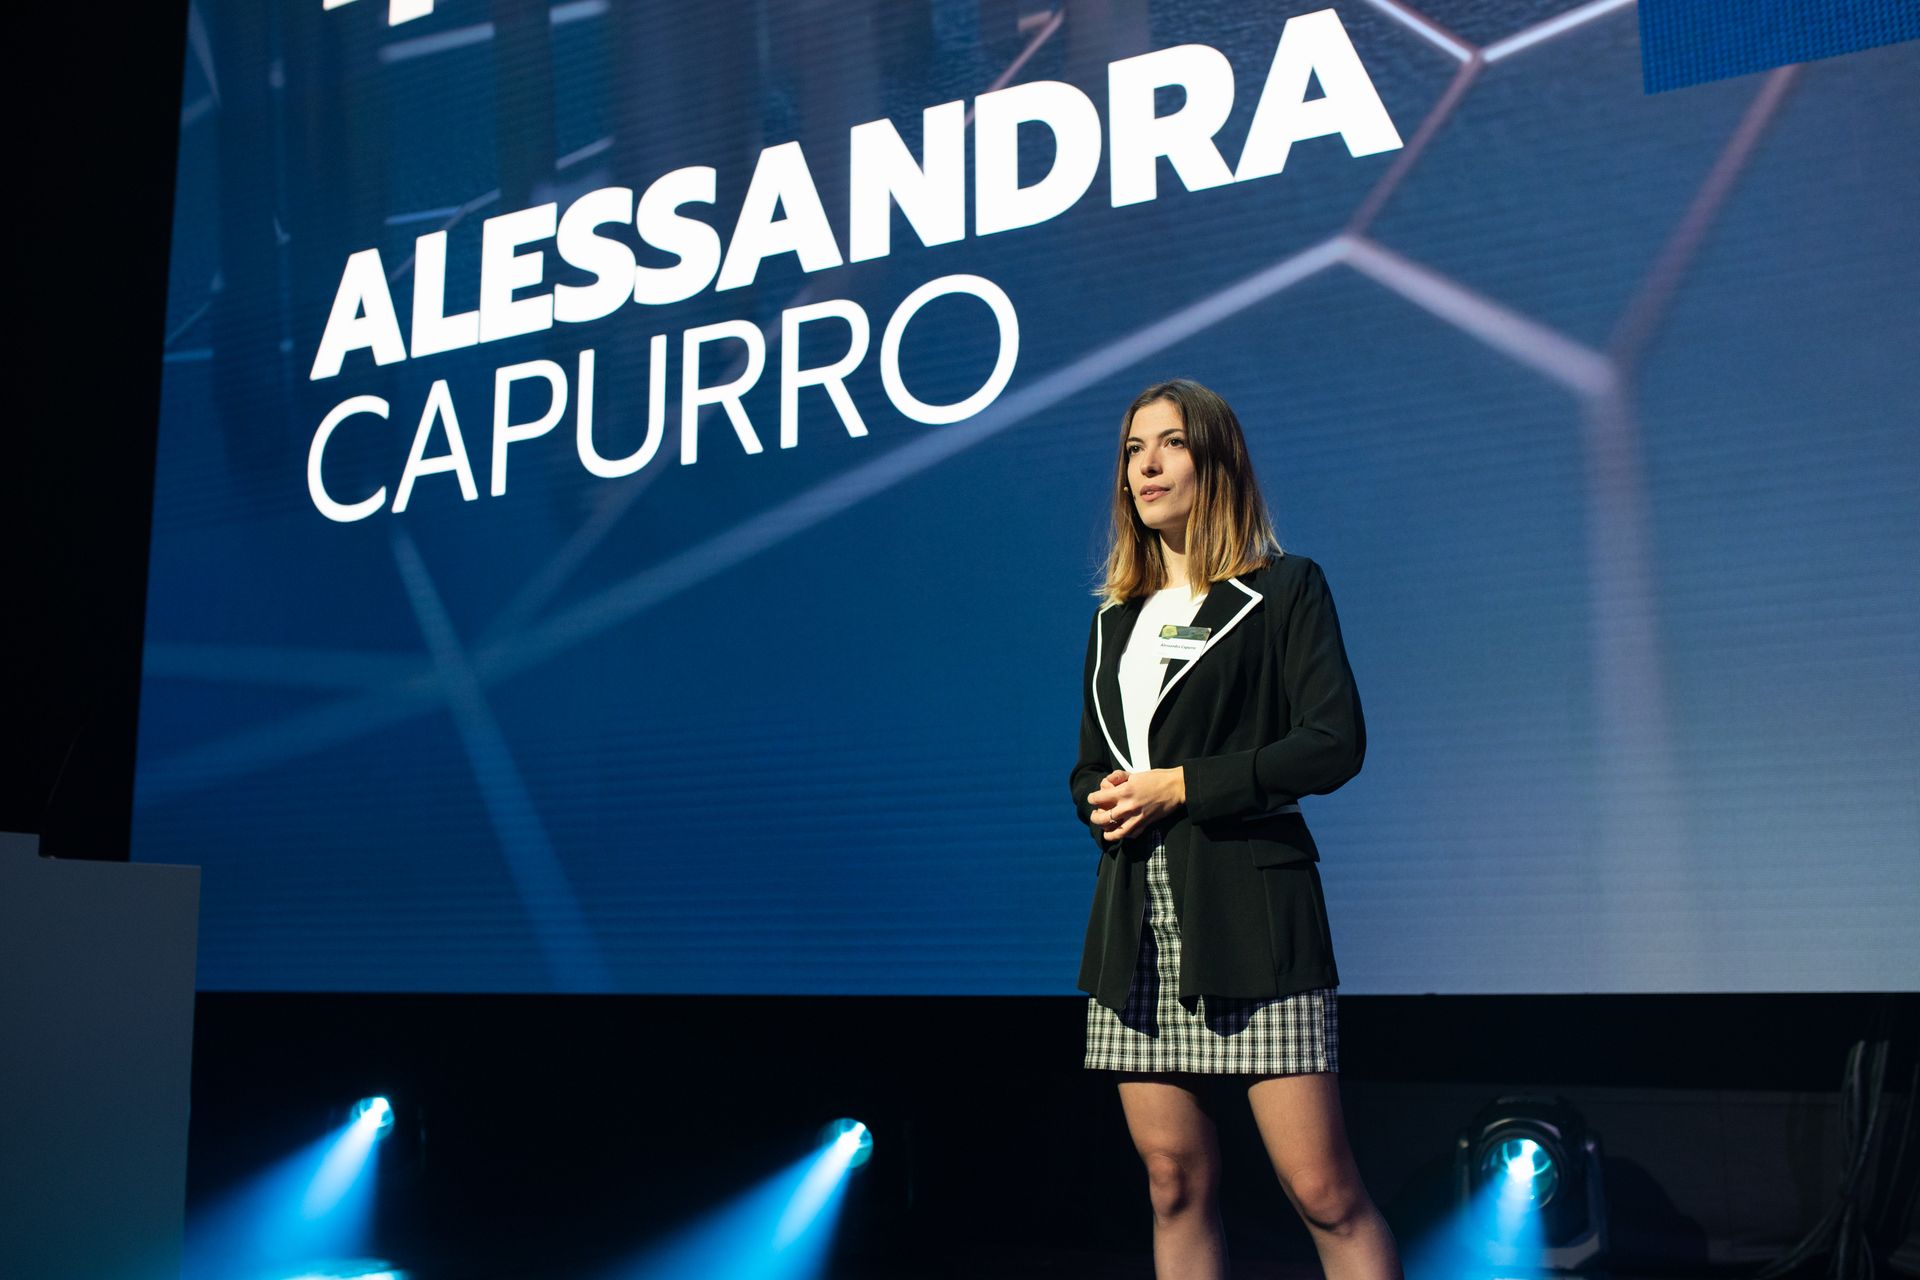 Alessandra Capurro, vincitrice della classifica "Nextgen Hero", alla premiazione dei "Digital Economy Award" della Svizzera